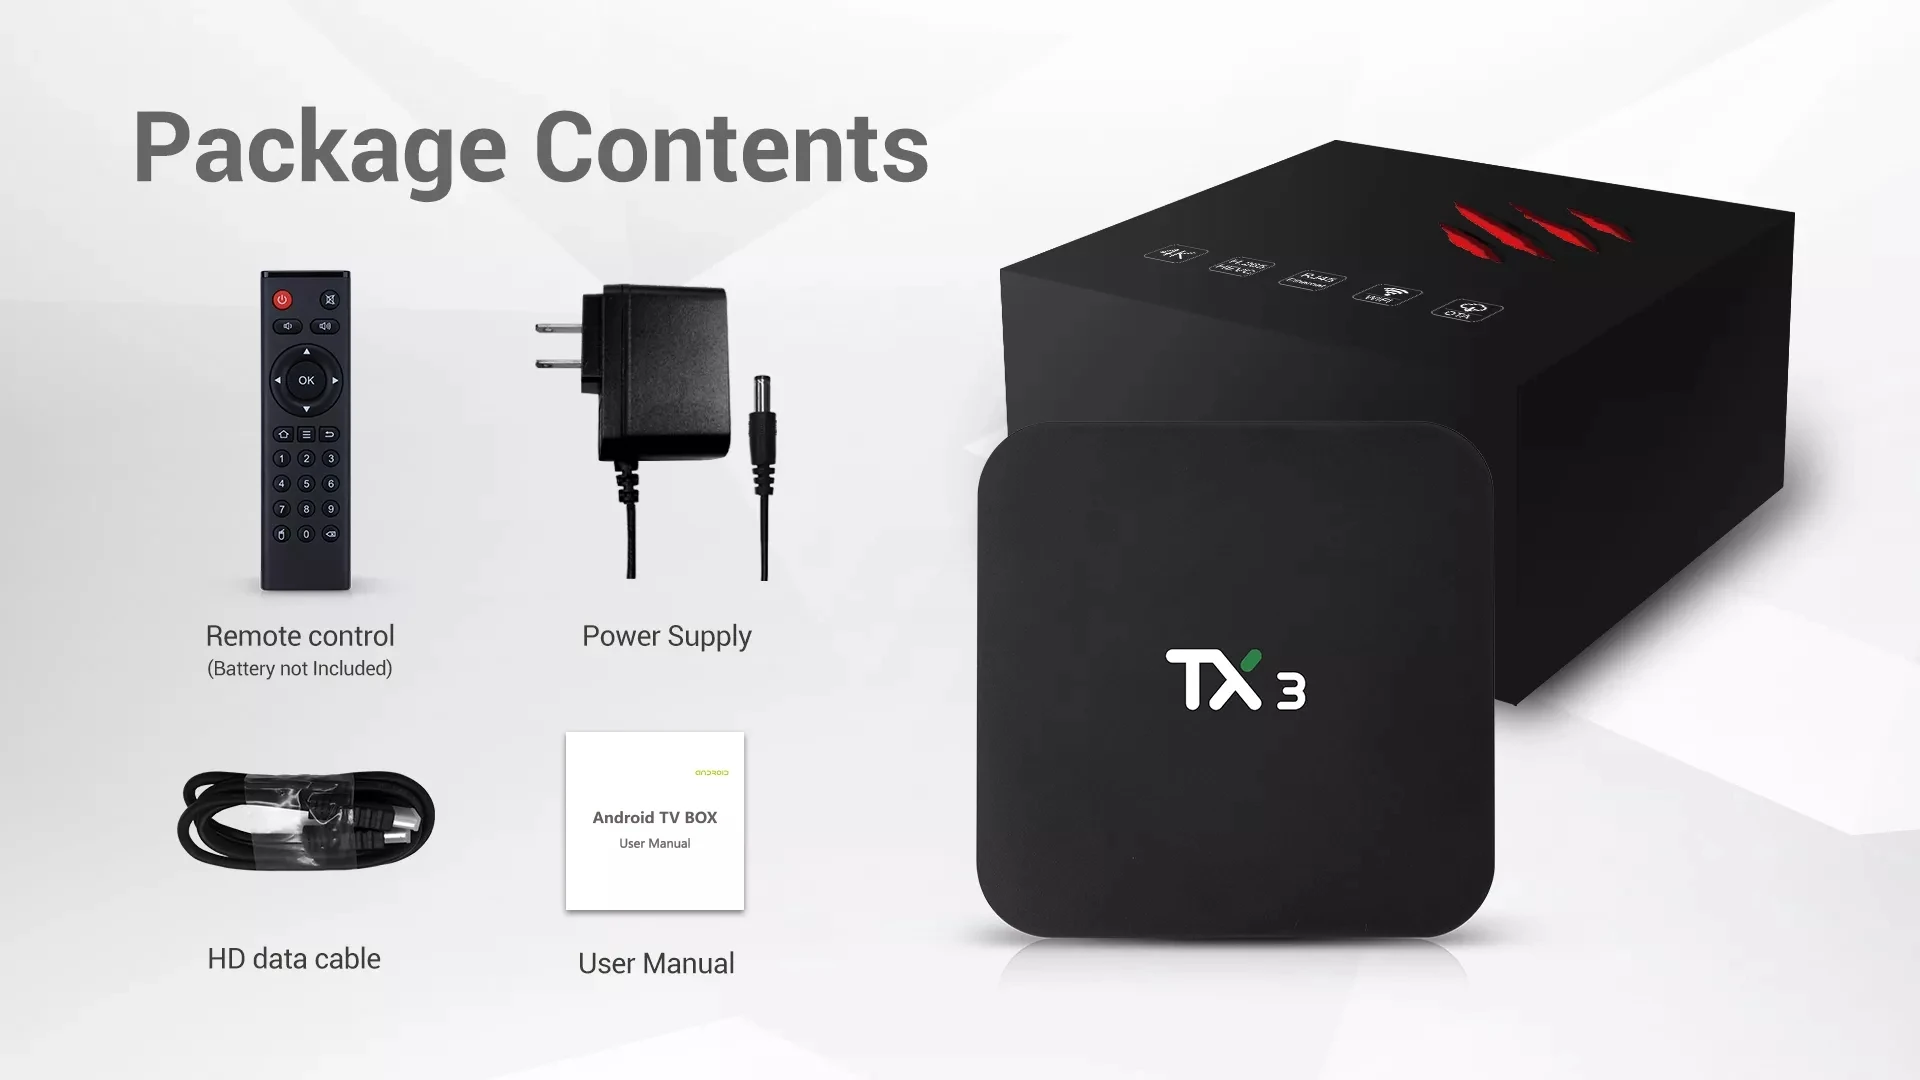 Тв-приставка Tanix TX3 Smart Android S905X3 4 гб озу 64 гб пзу 2,4G 5G WiFi BT 4,0 Android 9,0 тв-приставка поддержка голосового управления телеприставка